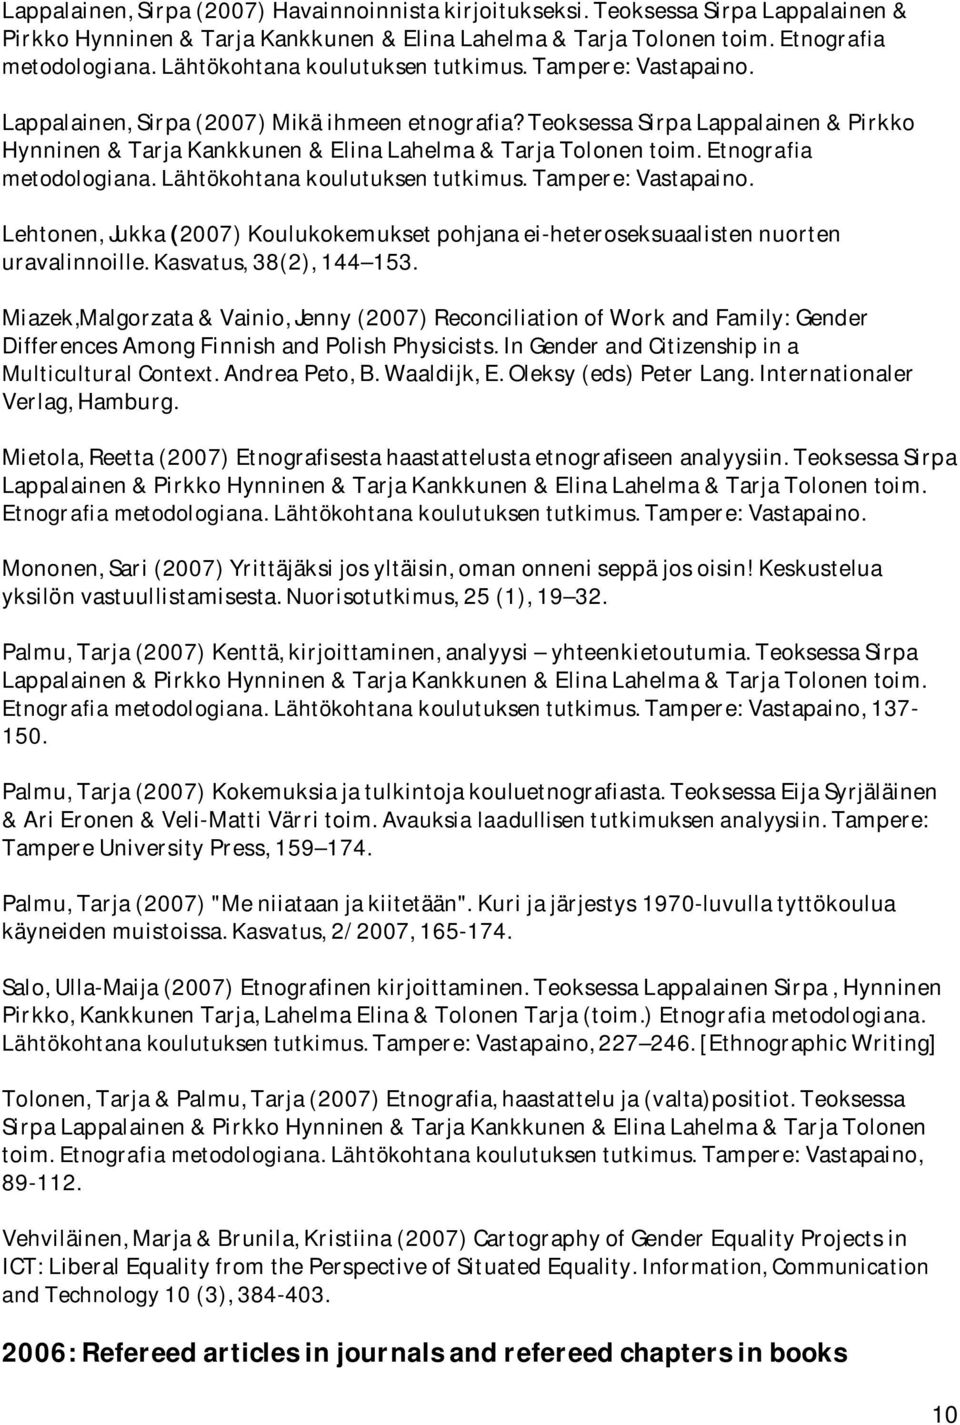 Teoksessa Sirpa Lappalainen & Pirkko Hynninen & Tarja Kankkunen & Elina Lahelma & Tarja Tolonen toim. Etnografia metodologiana. Lähtökohtana koulutuksen tutkimus. Tampere: Vastapaino.